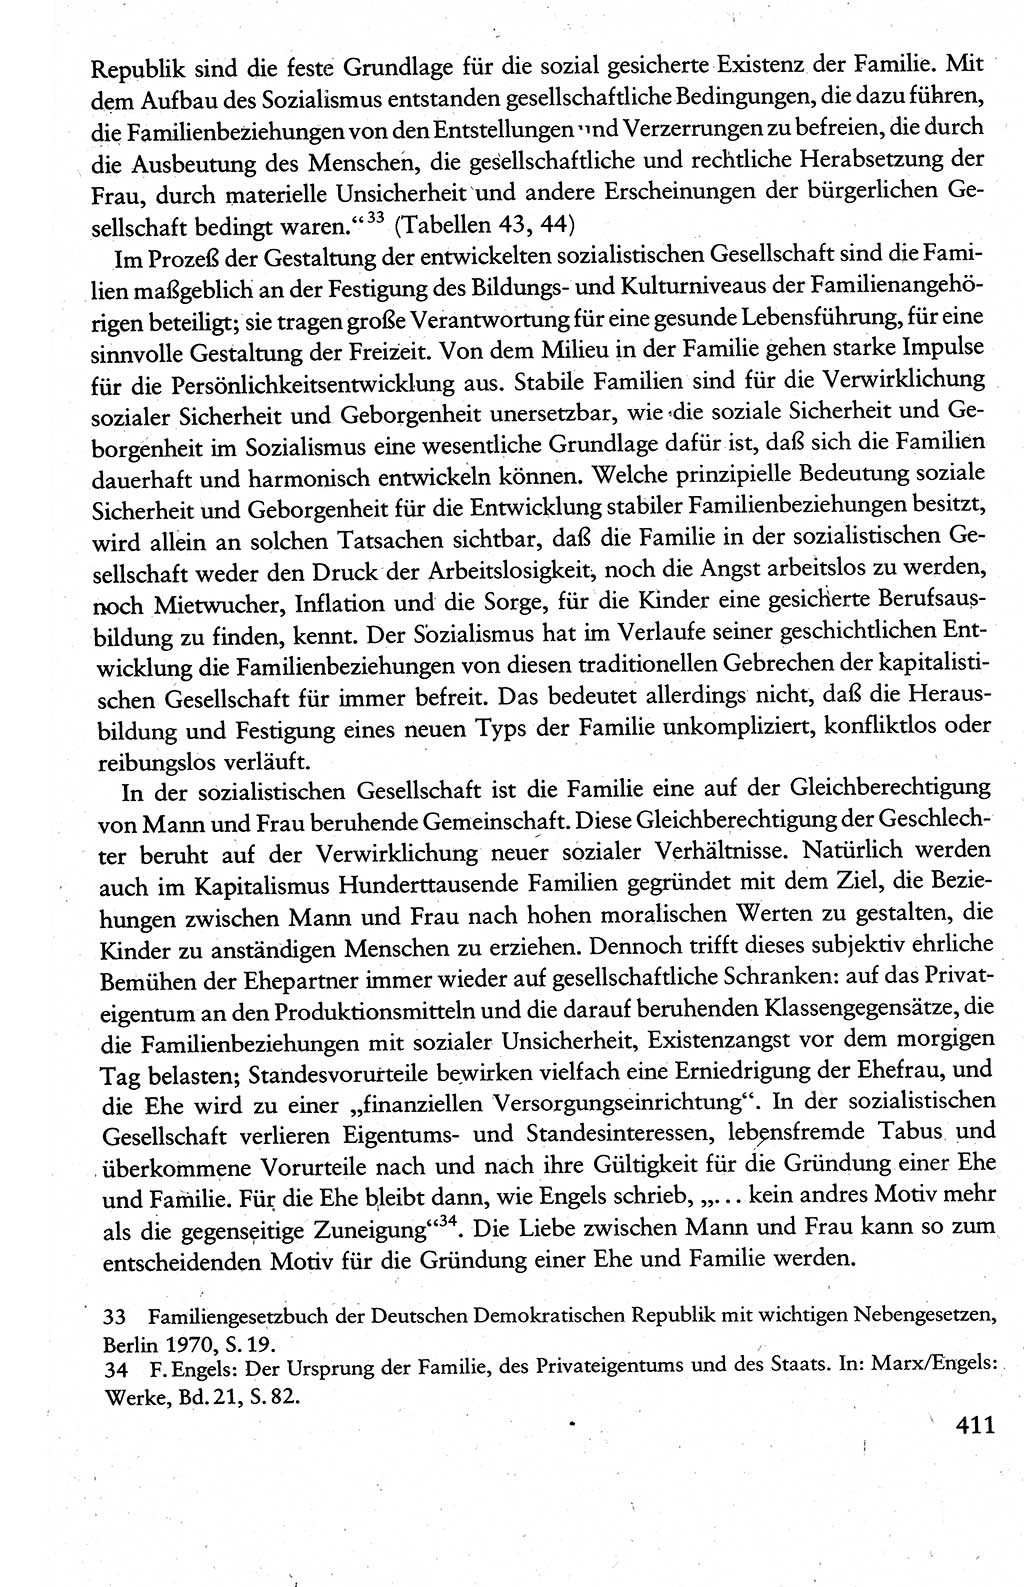 Wissenschaftlicher Kommunismus [Deutsche Demokratische Republik (DDR)], Lehrbuch für das marxistisch-leninistische Grundlagenstudium 1983, Seite 411 (Wiss. Komm. DDR Lb. 1983, S. 411)